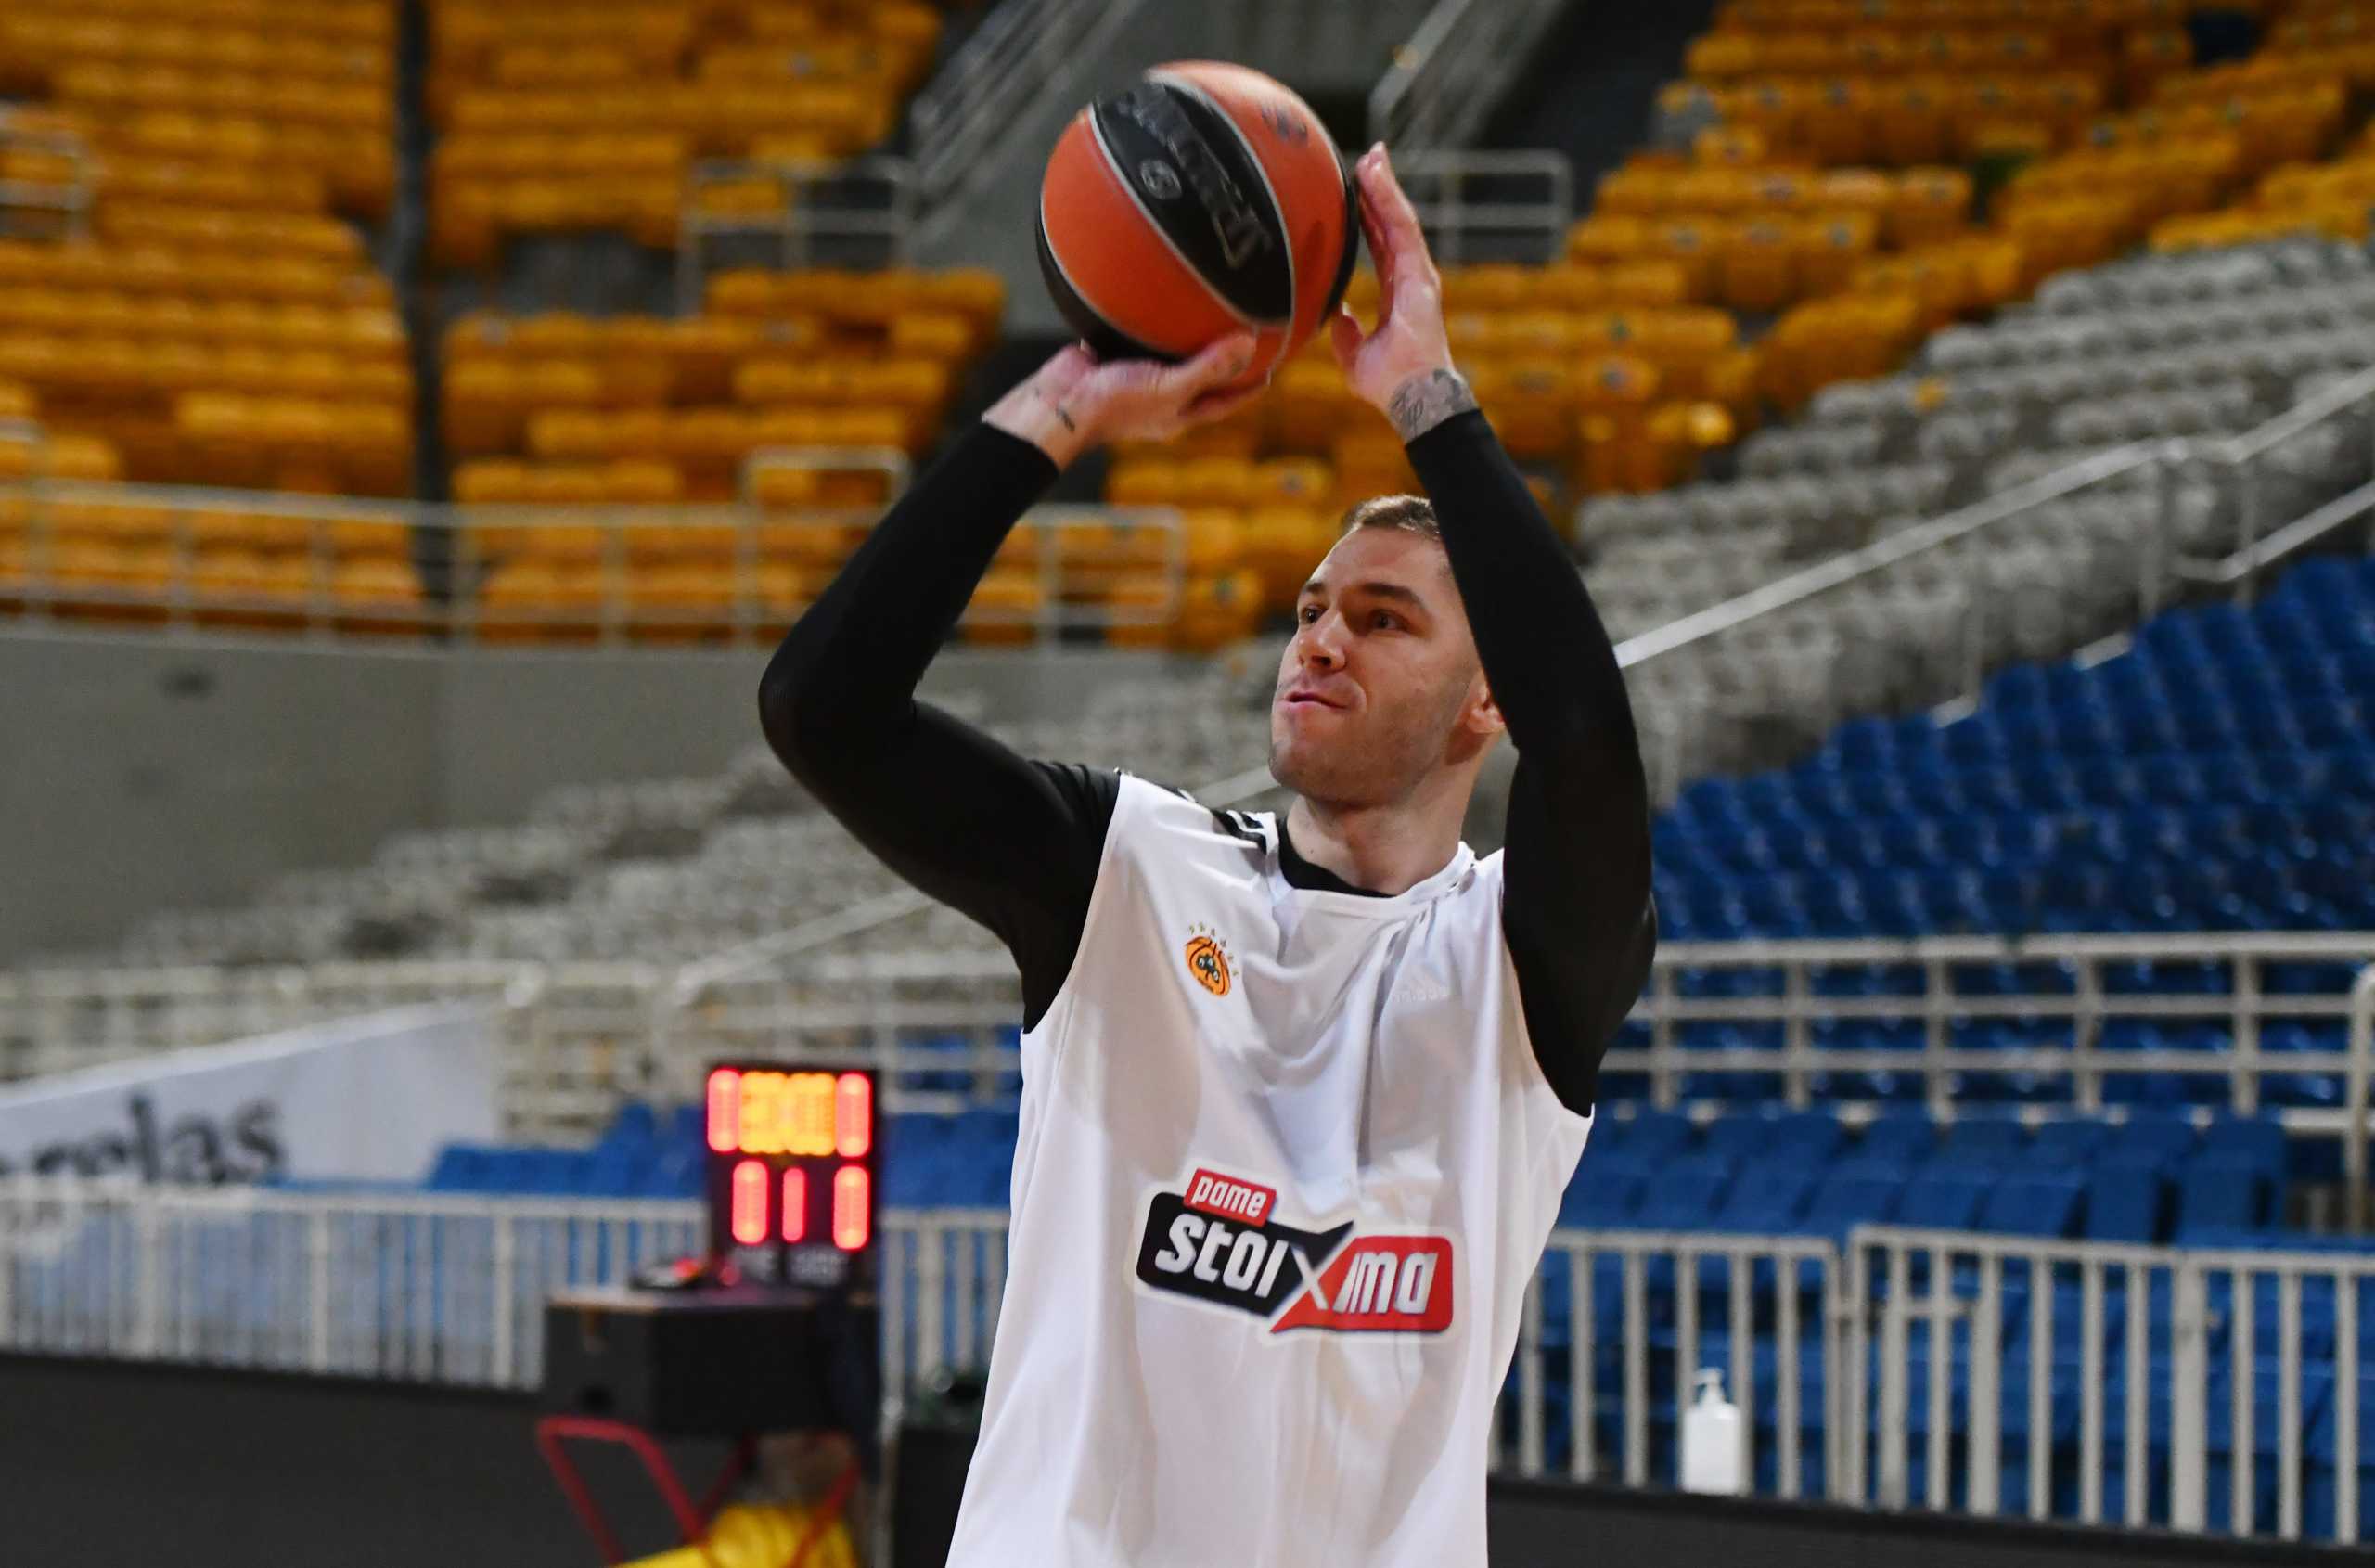 Παναθηναϊκός: Ο Γιόβιτς διάλεξε αριθμό και δηλώθηκε σε Euroleague και Basket League